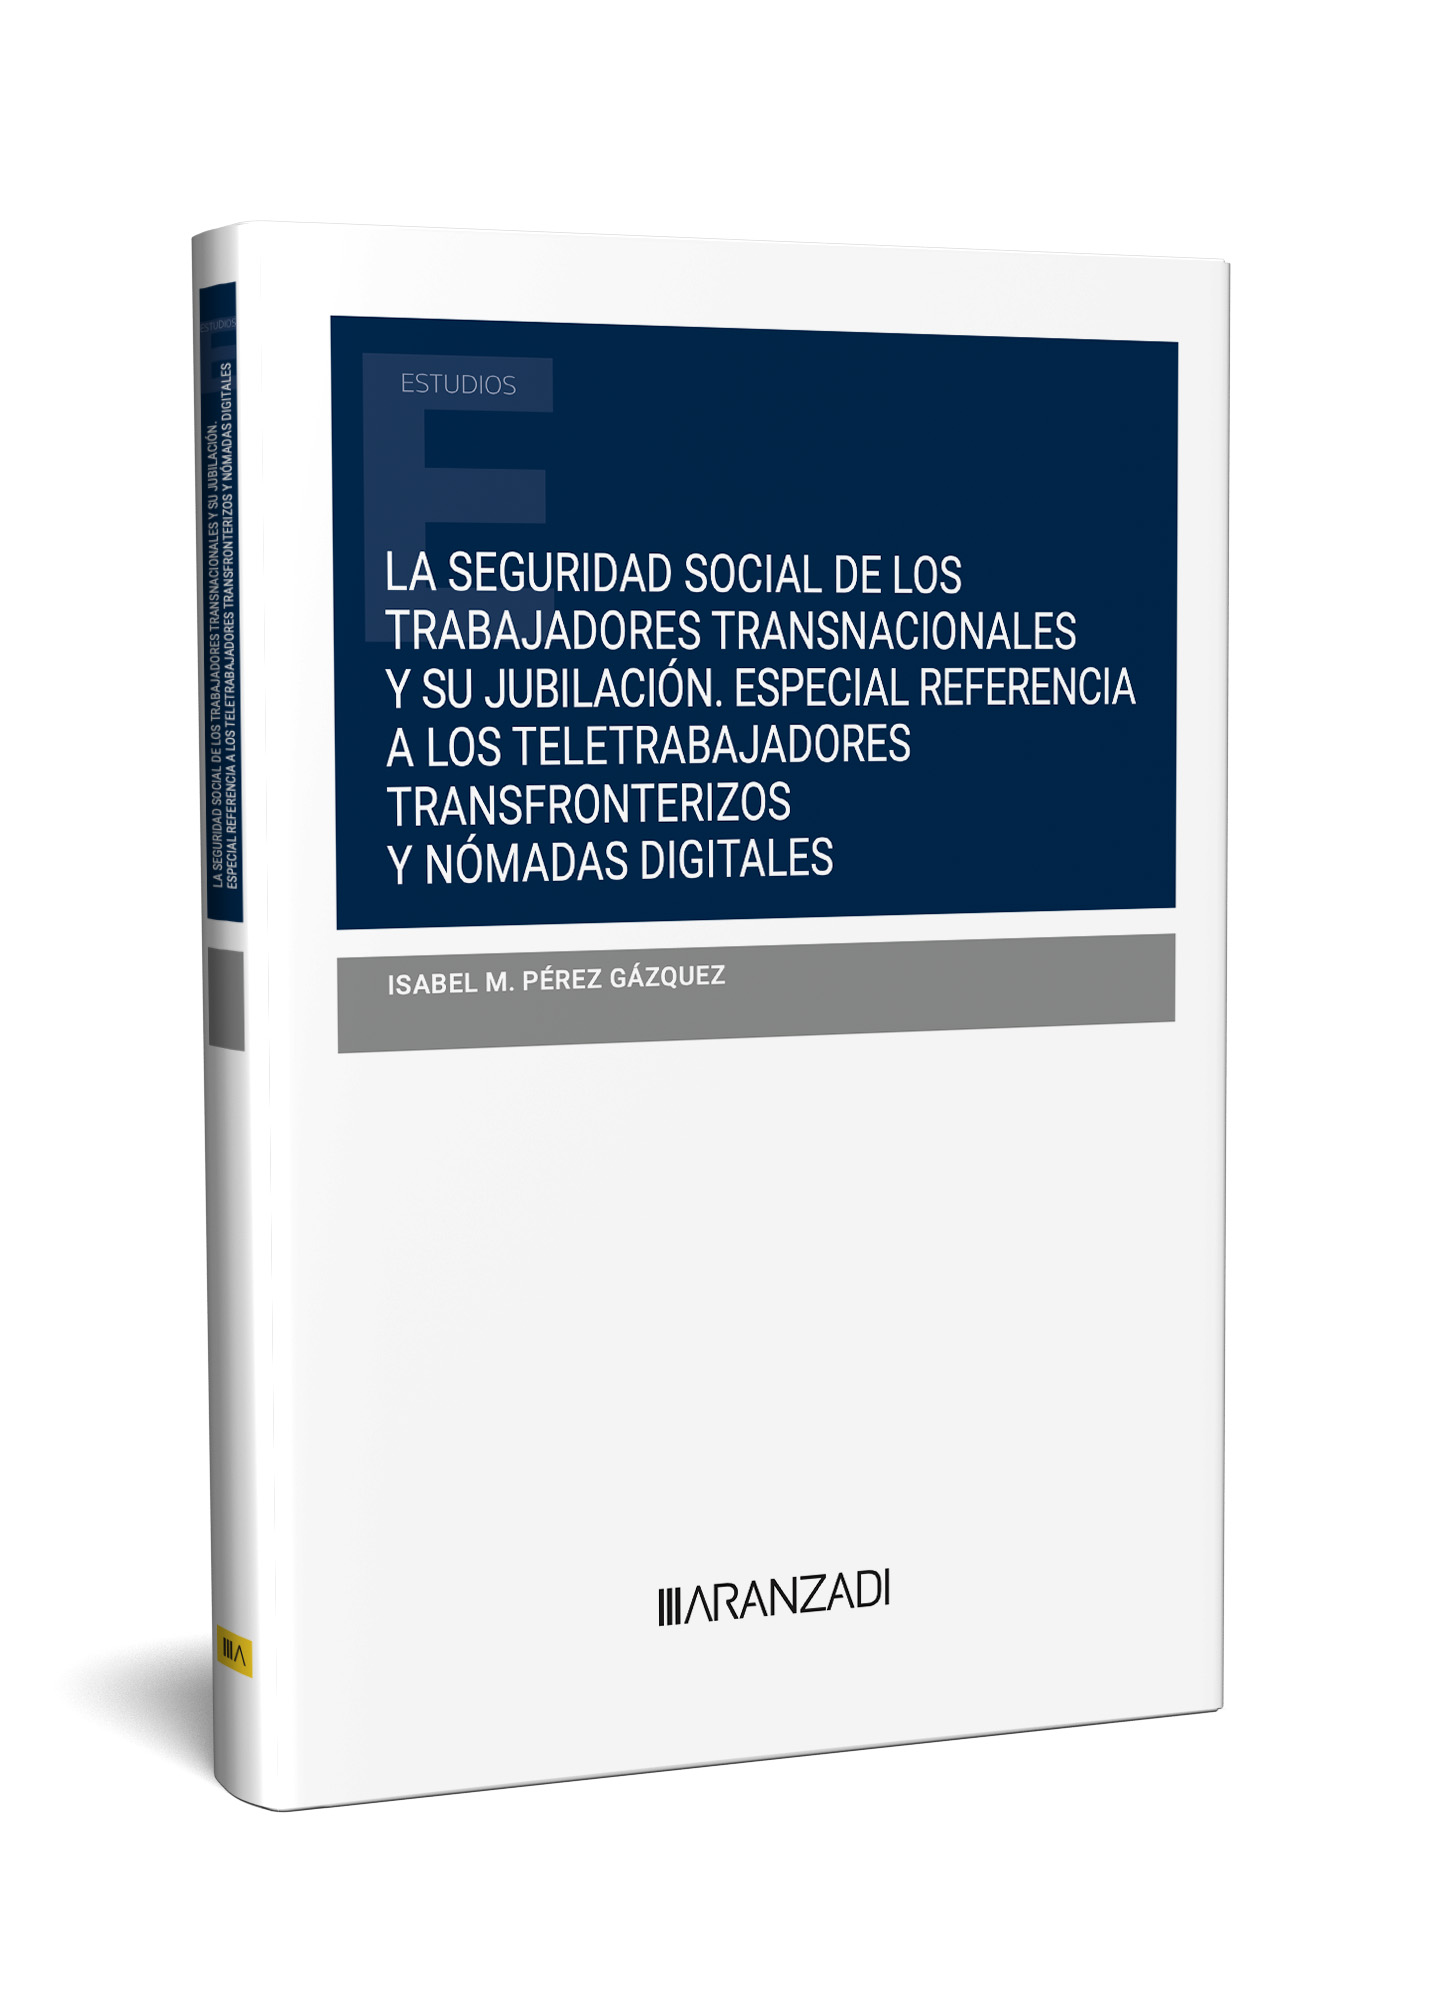 La seguridad social de los trabajadores transnacionales y su jubilación   Especial referencia a los teletrabajadores transfronterizos y nómadas digitales